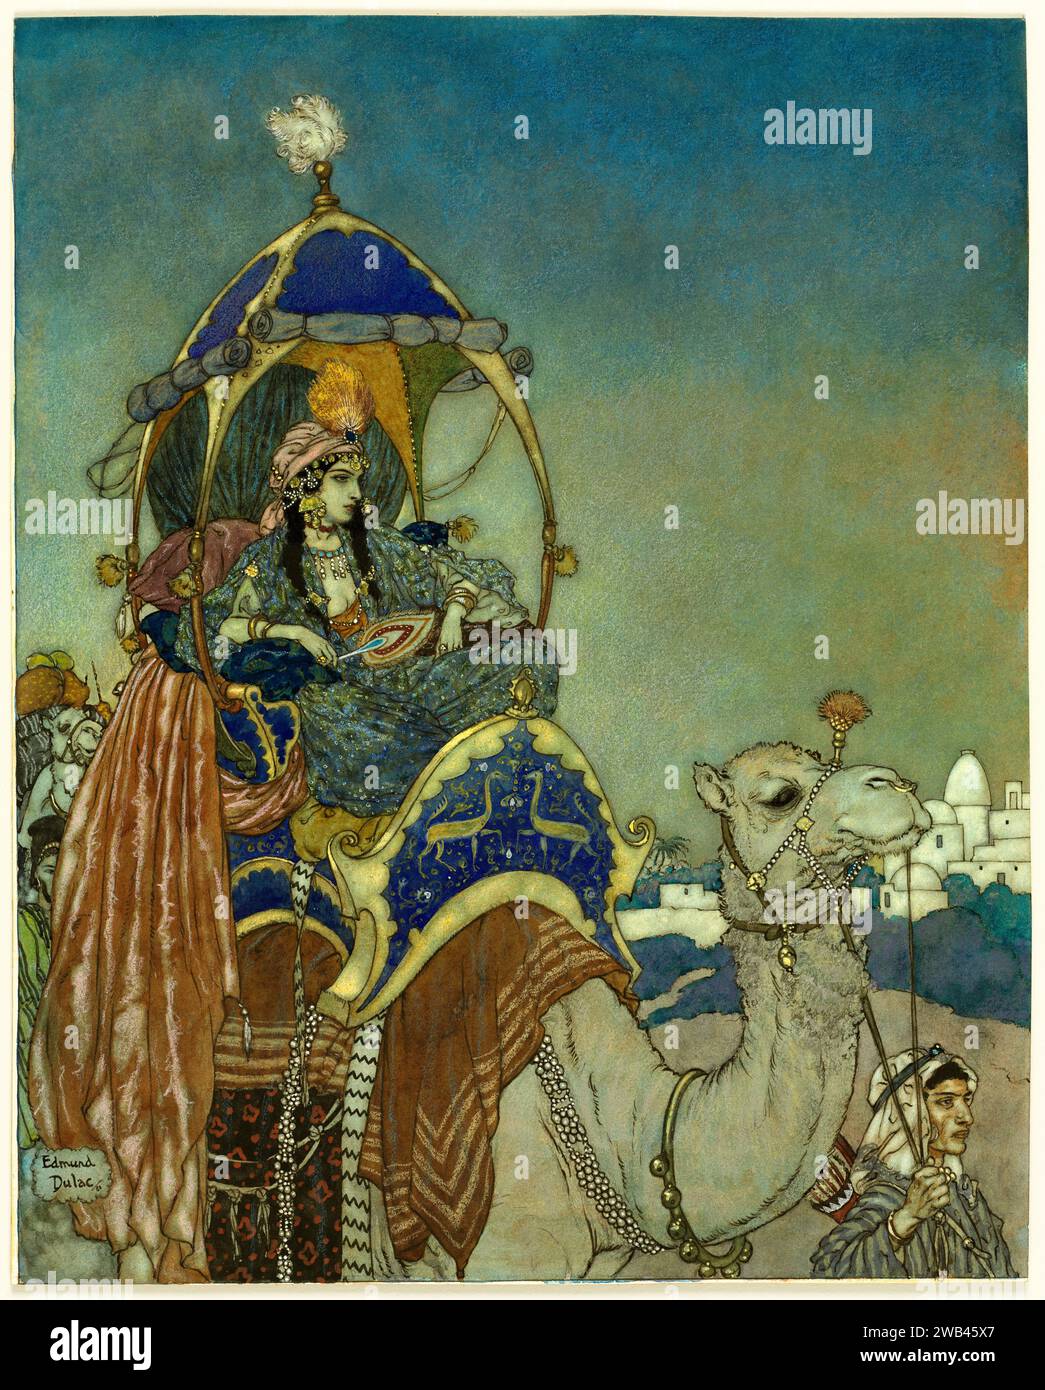 The Queen of Sheba.  Edmund Dulac.  1911. Stock Photo